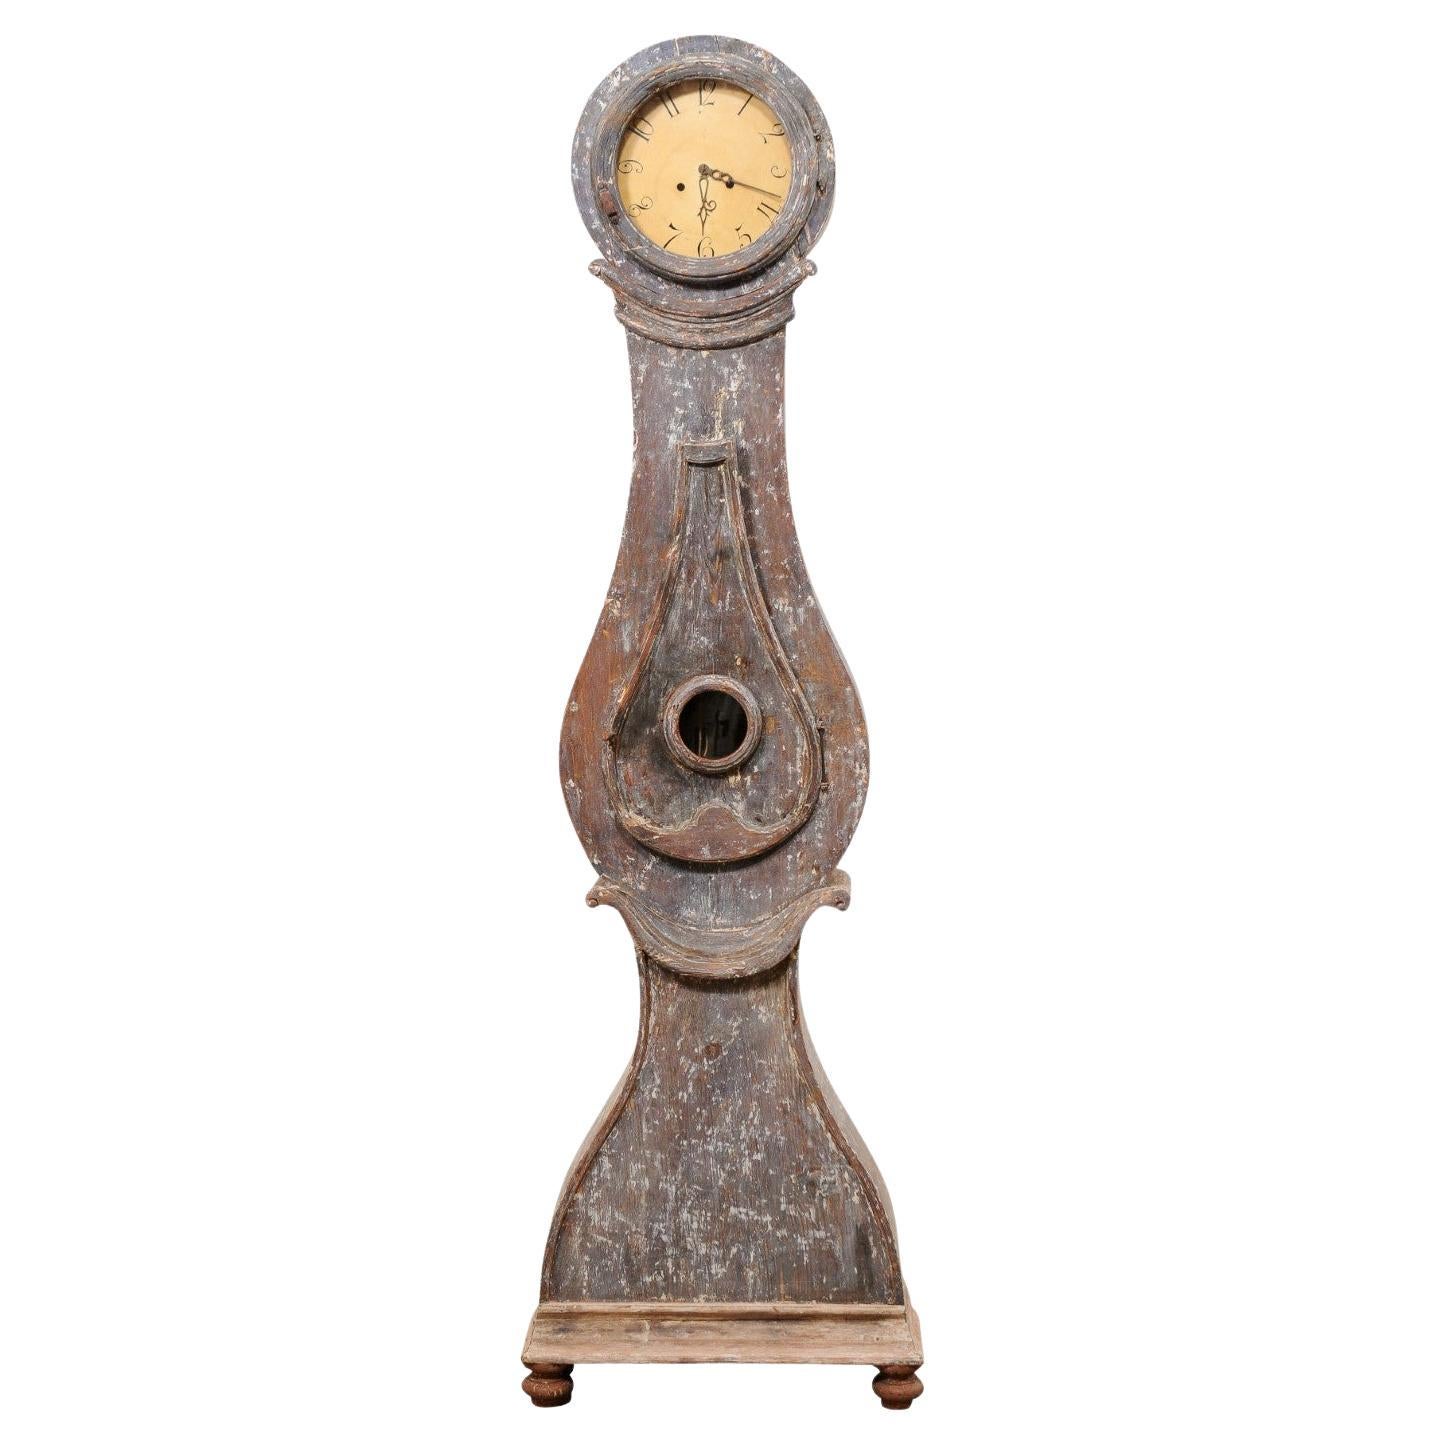 Horloge de sol suédoise Fryksdahl du 19e siècle avec son visage et ses mouvements en métal d'origine